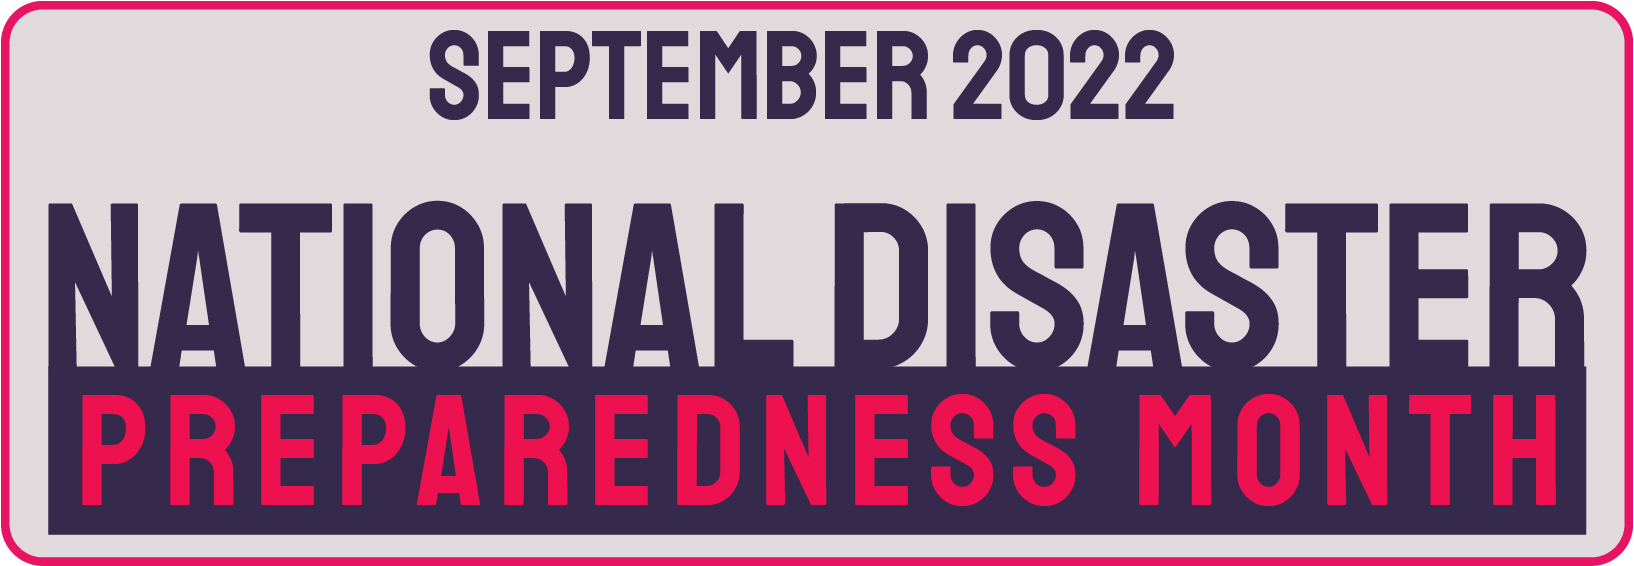 September 2022 - National Disaster Preparedness Month